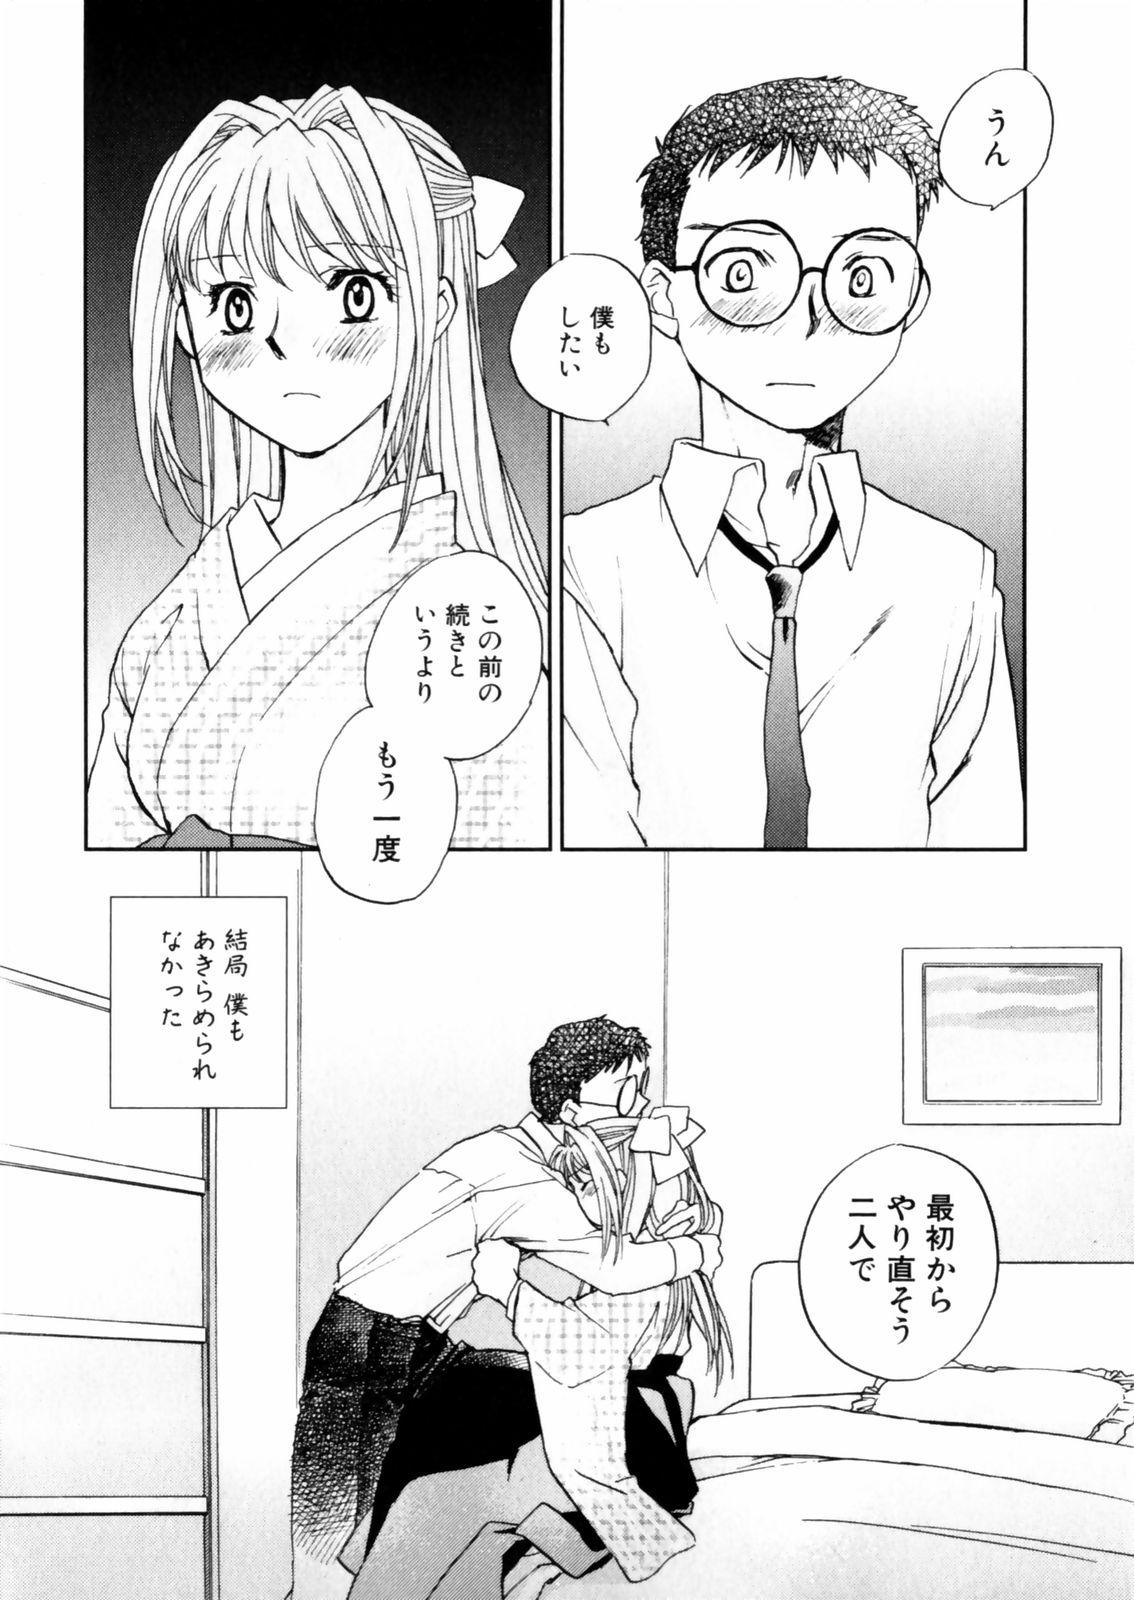 [Okano Ahiru] Hanasake ! Otome Juku (Otome Private Tutoring School) Vol.2 95